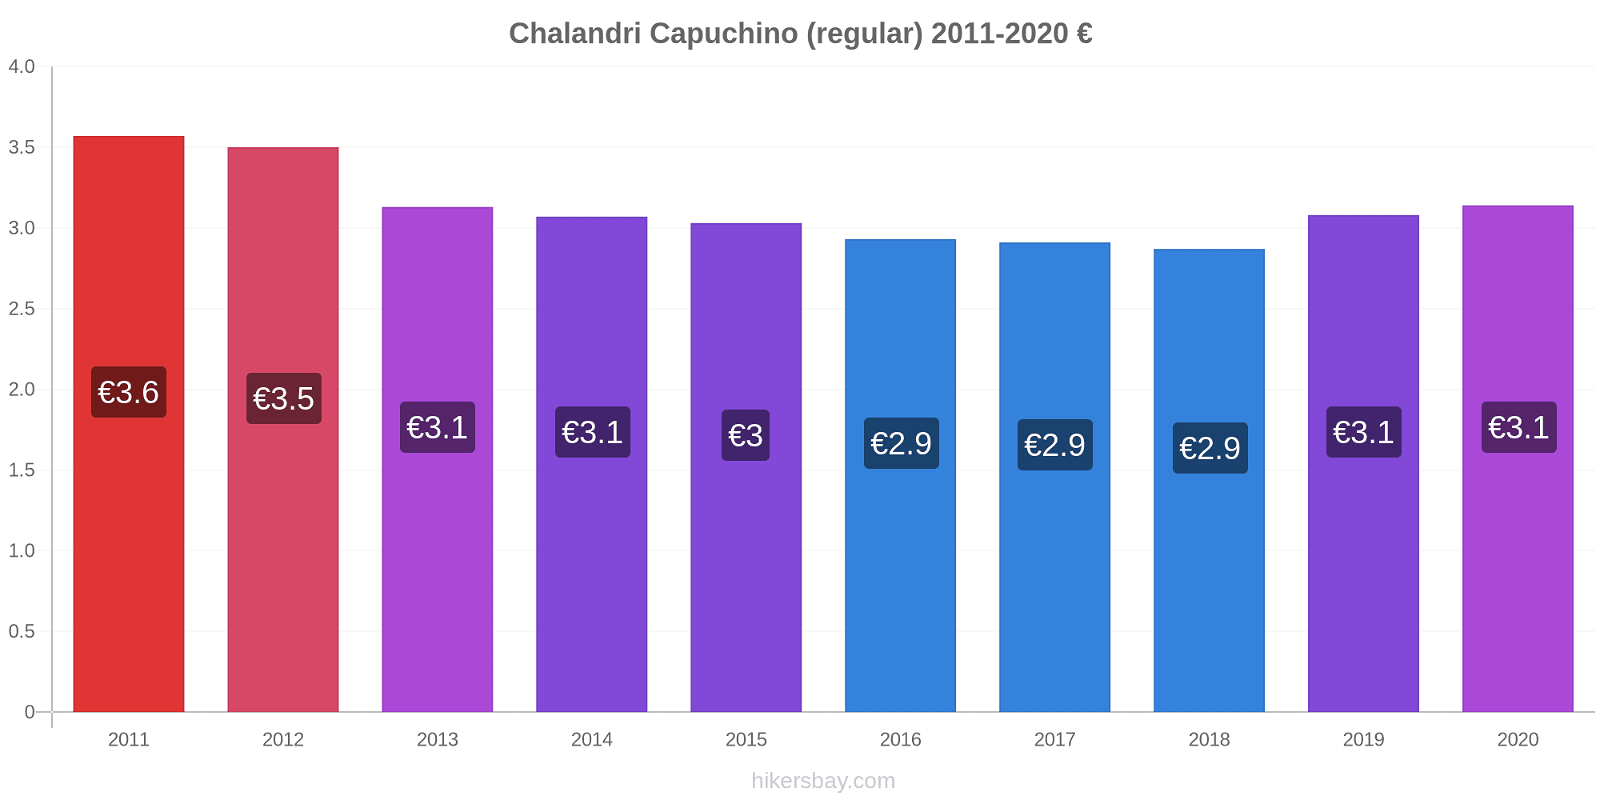 Chalandri cambios de precios Capuchino (regular) hikersbay.com